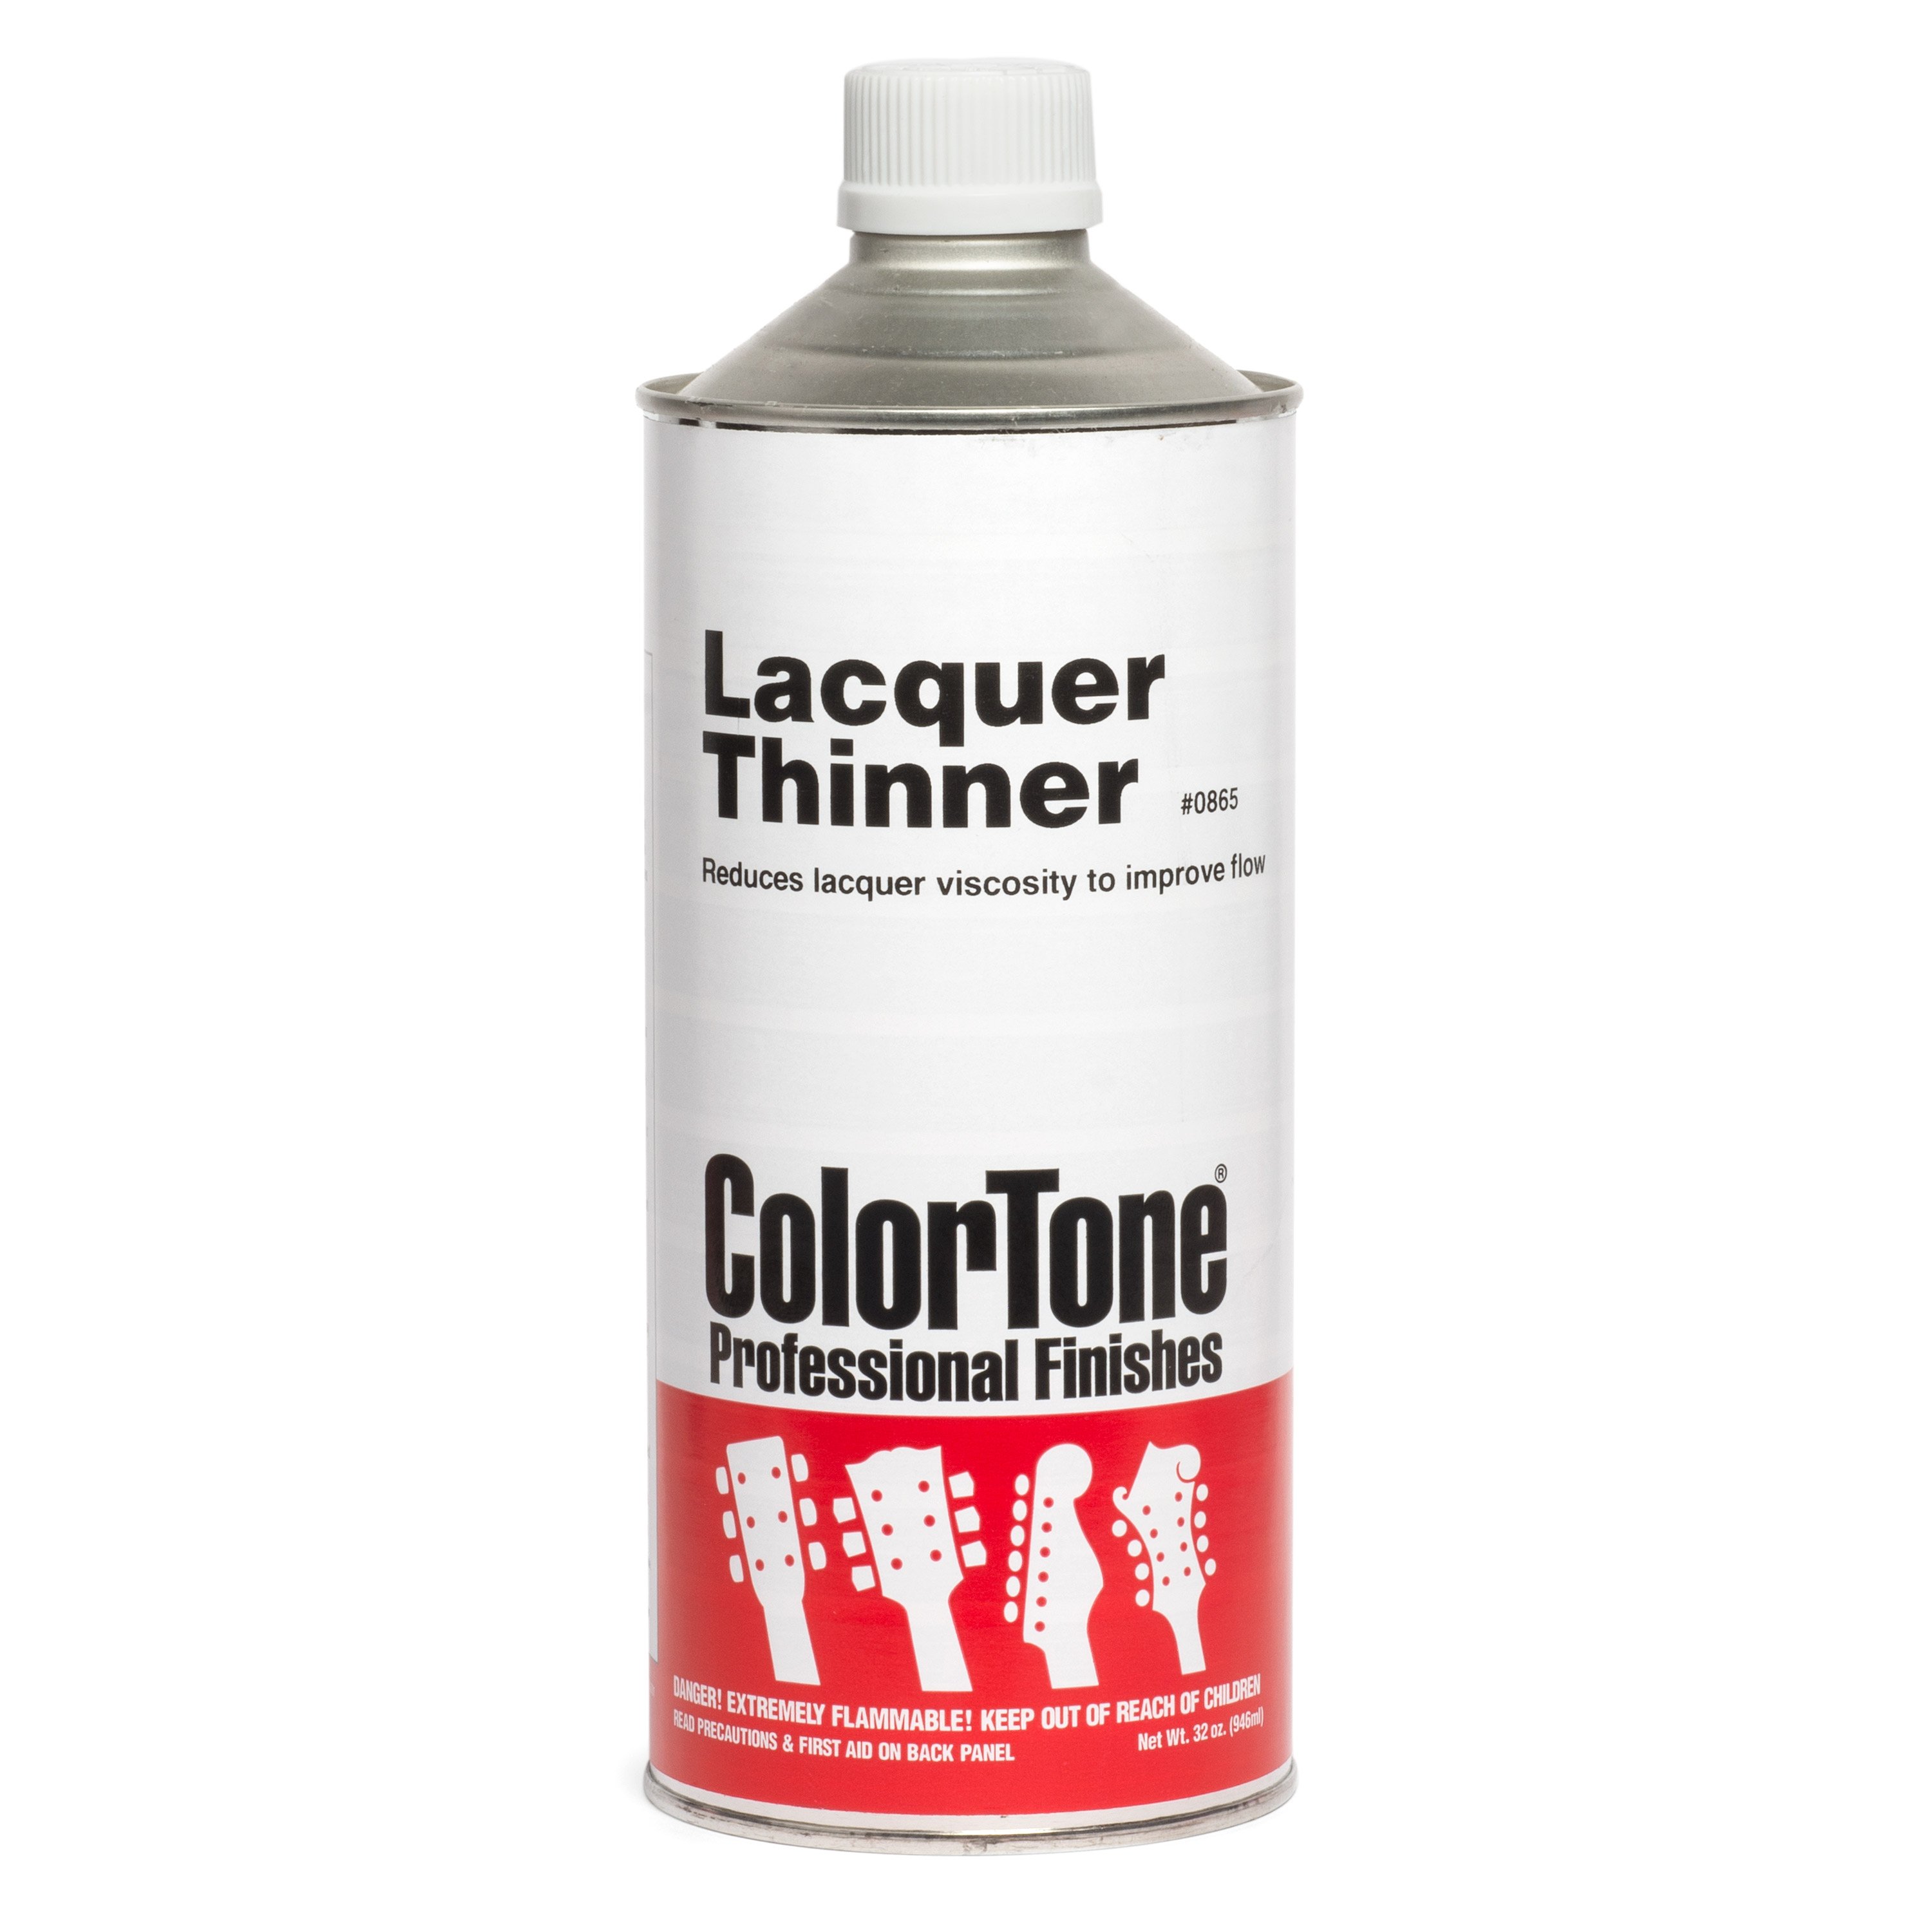 ColorTone Lacquer Thinner